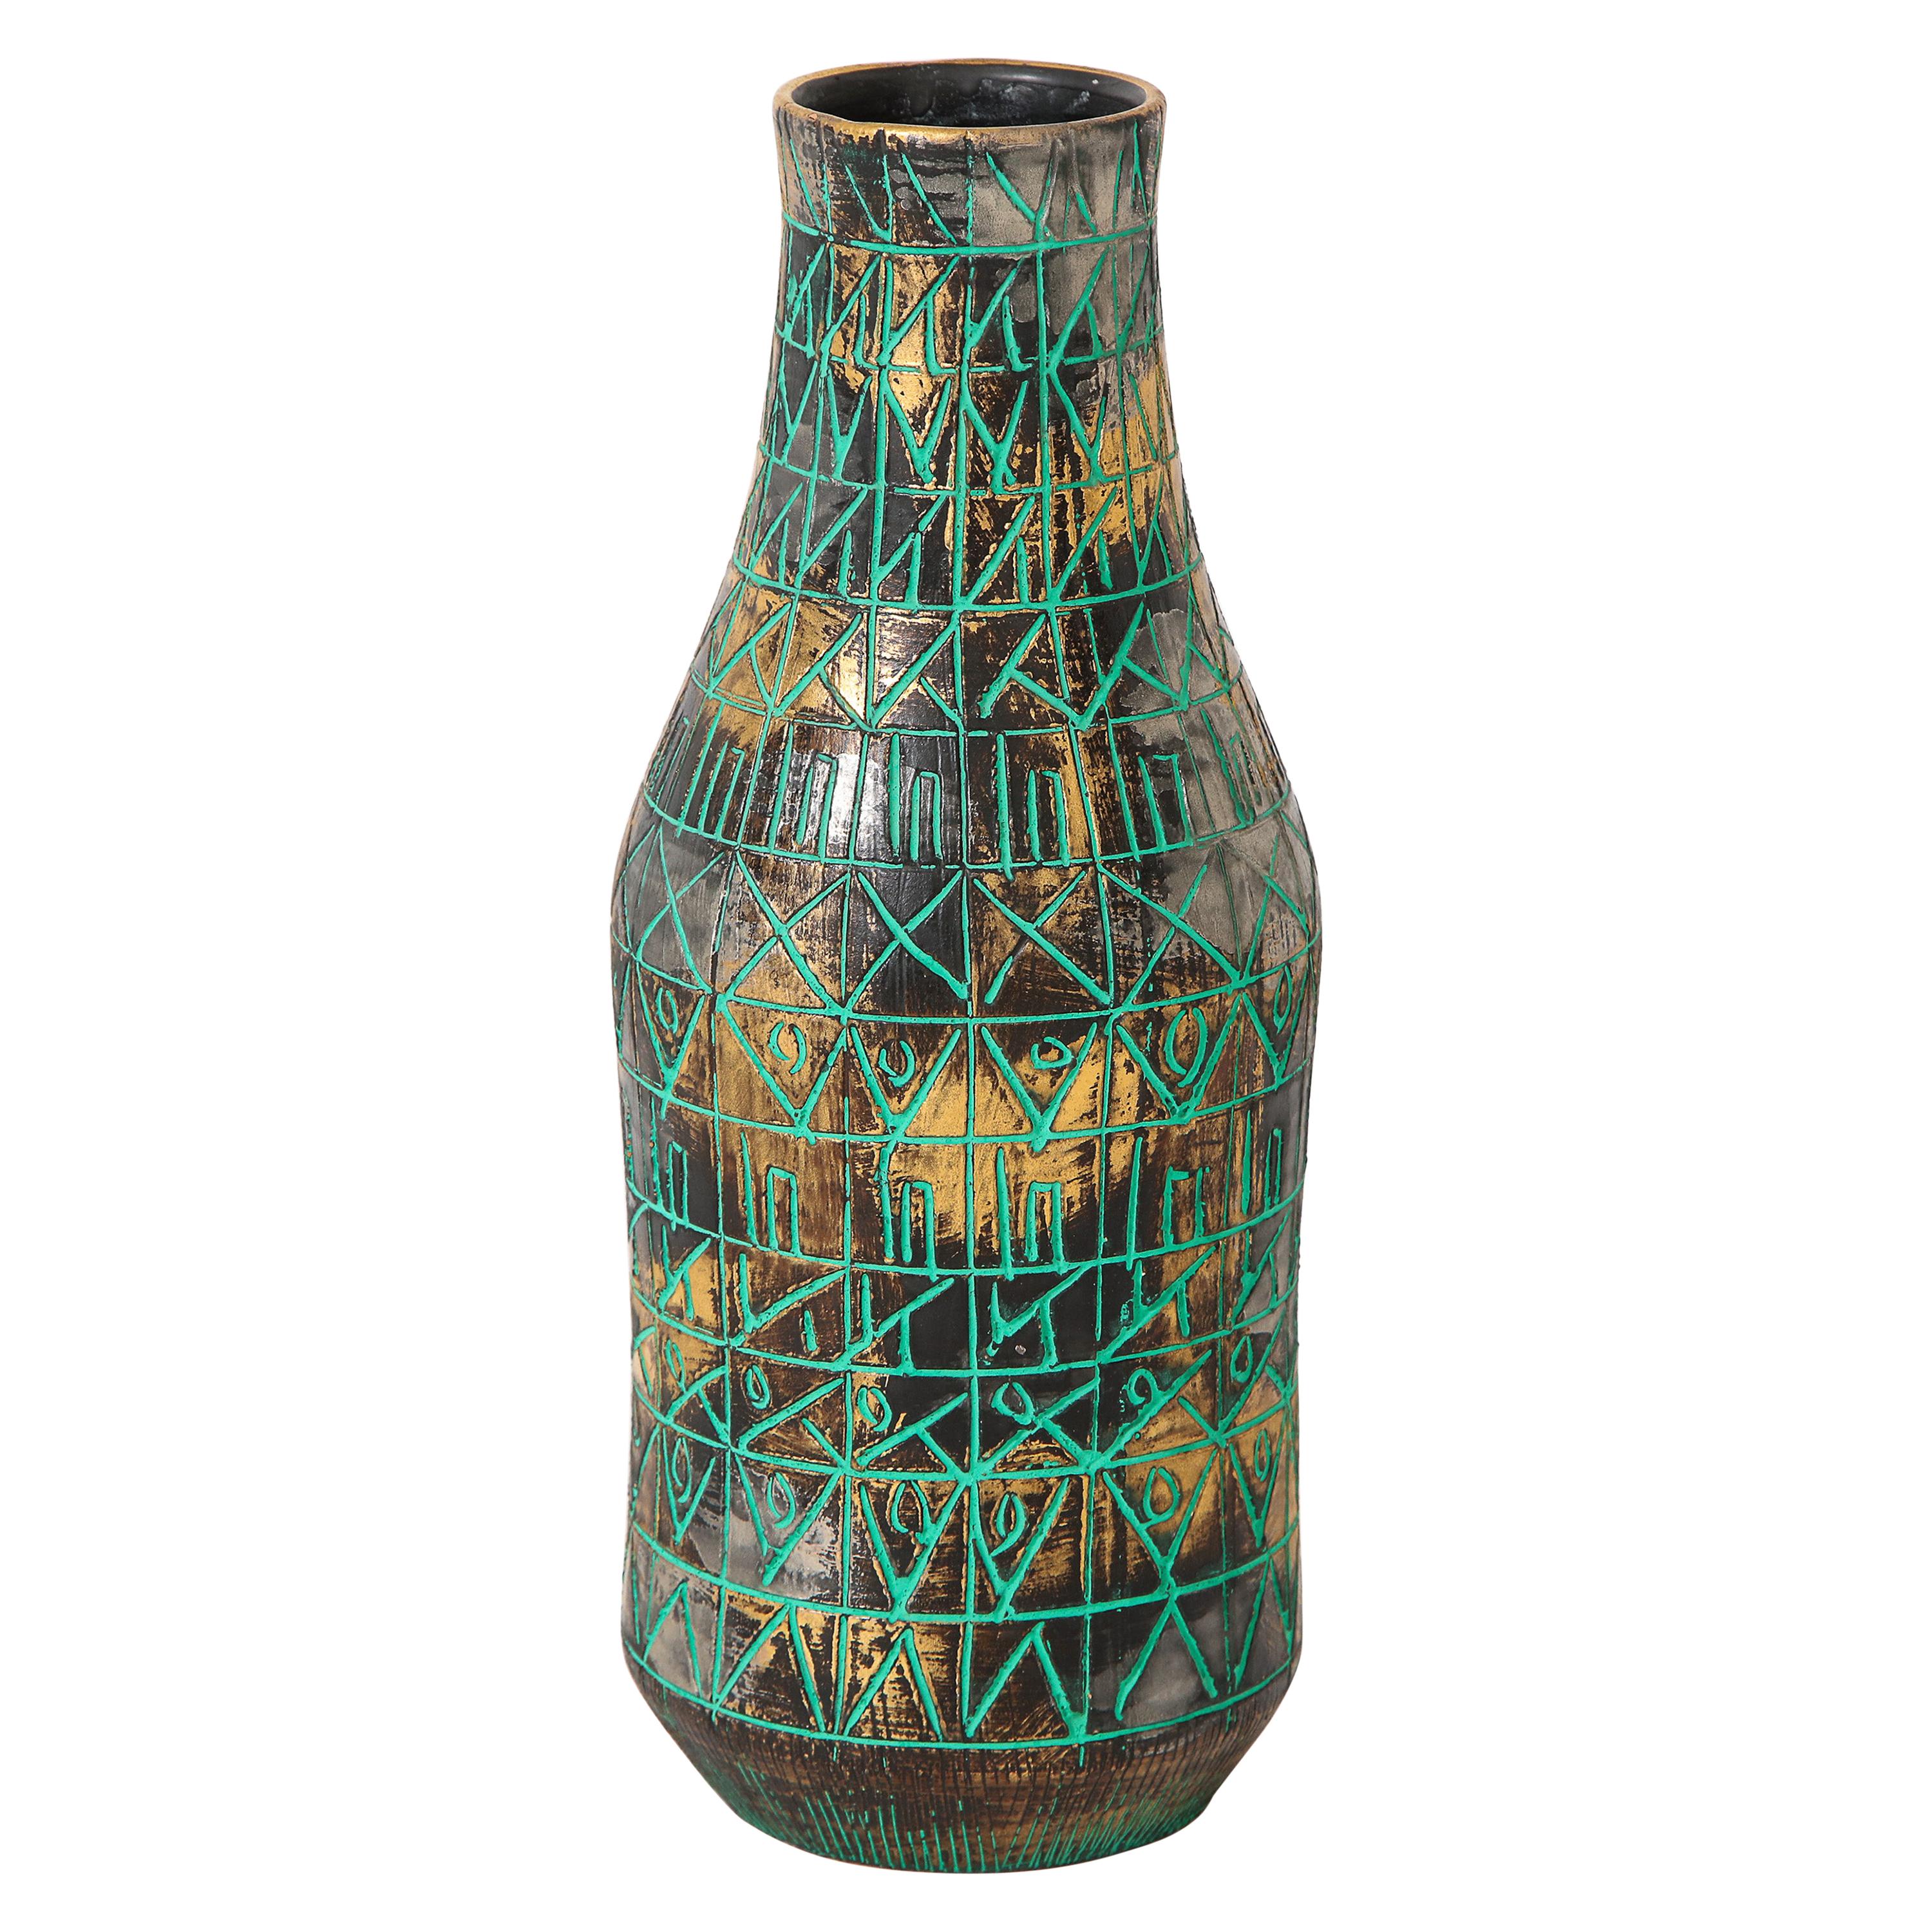 Raymor Vase, Ceramic, Sgraffito, Green, Gold, Chrome, Signed